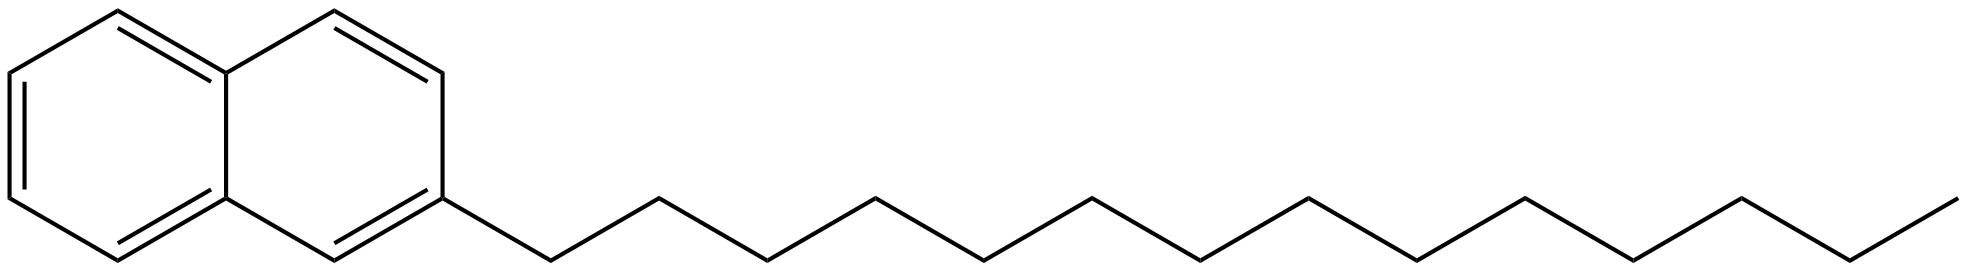 Image of 2-tetradecylnaphthalene